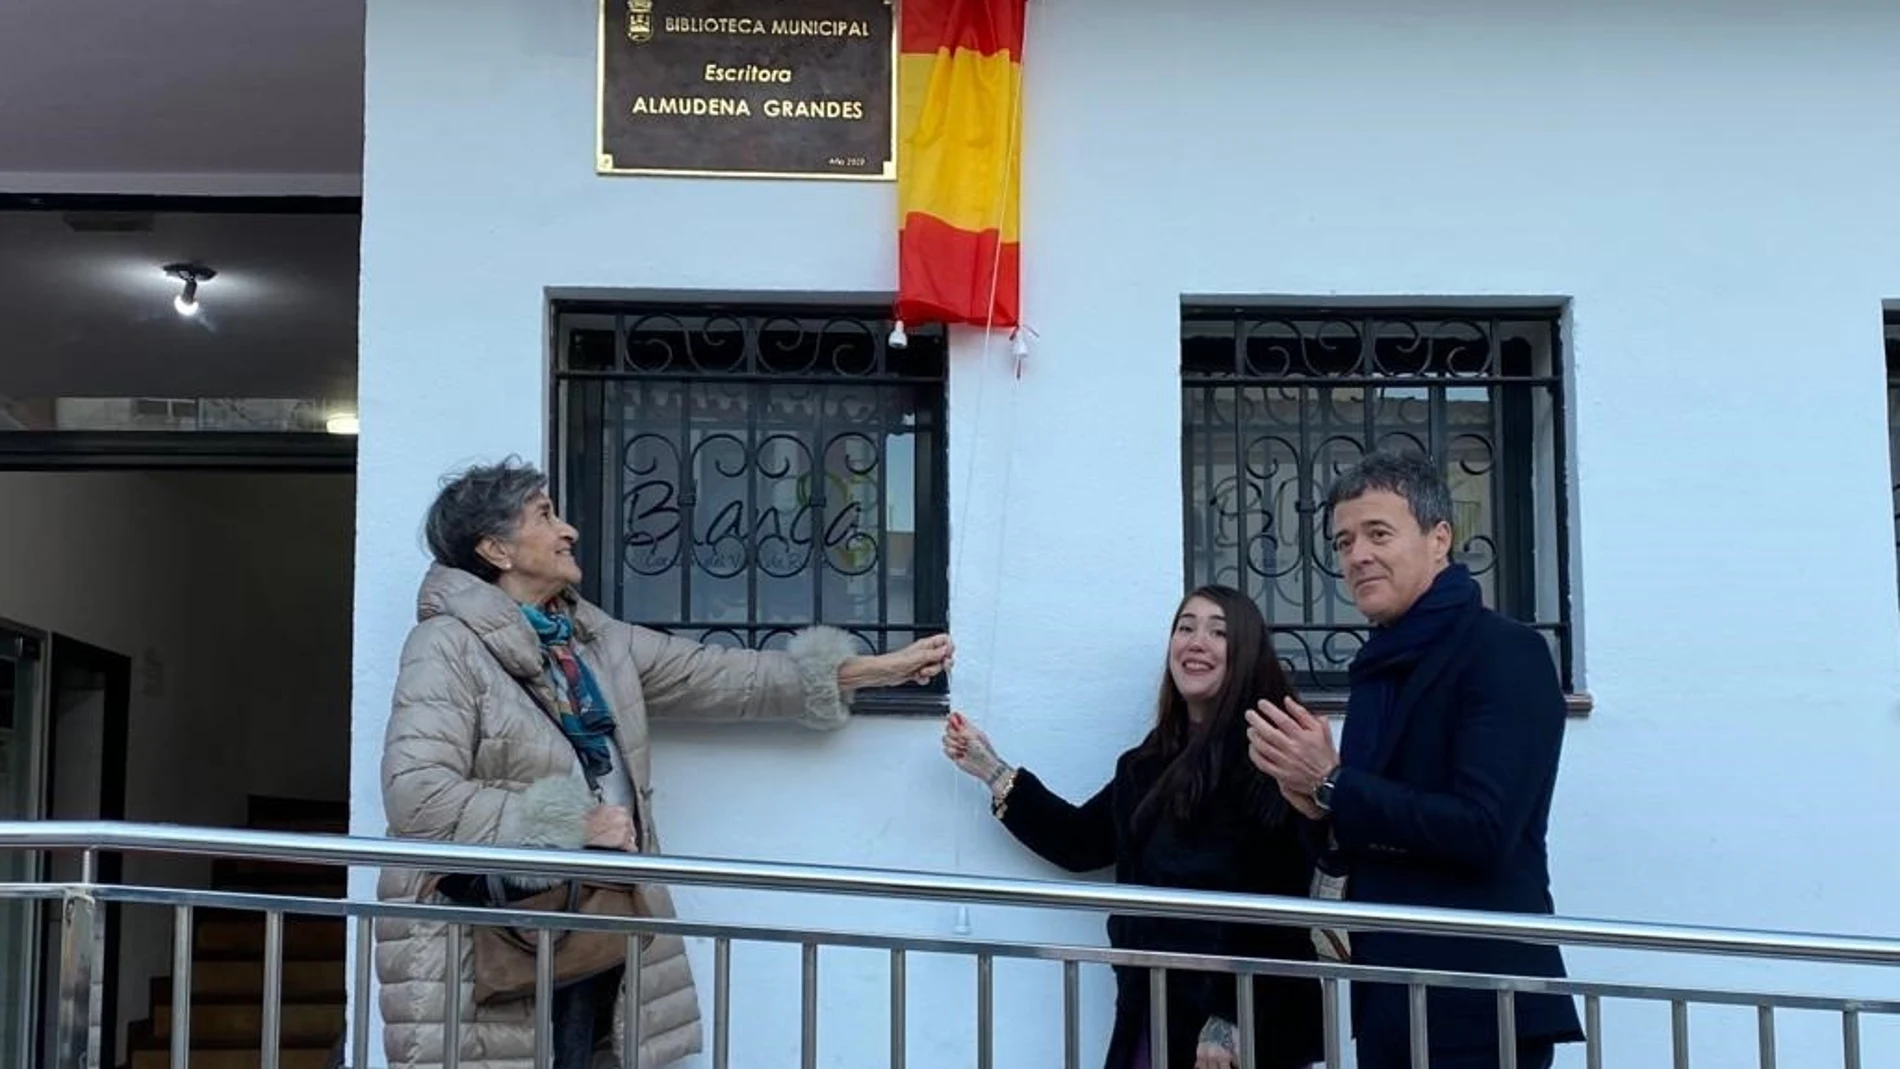 El Ayuntamiento de Blanca rinde homenaje a Almudena Grandes poniendo su nombre a la biblioteca municipal